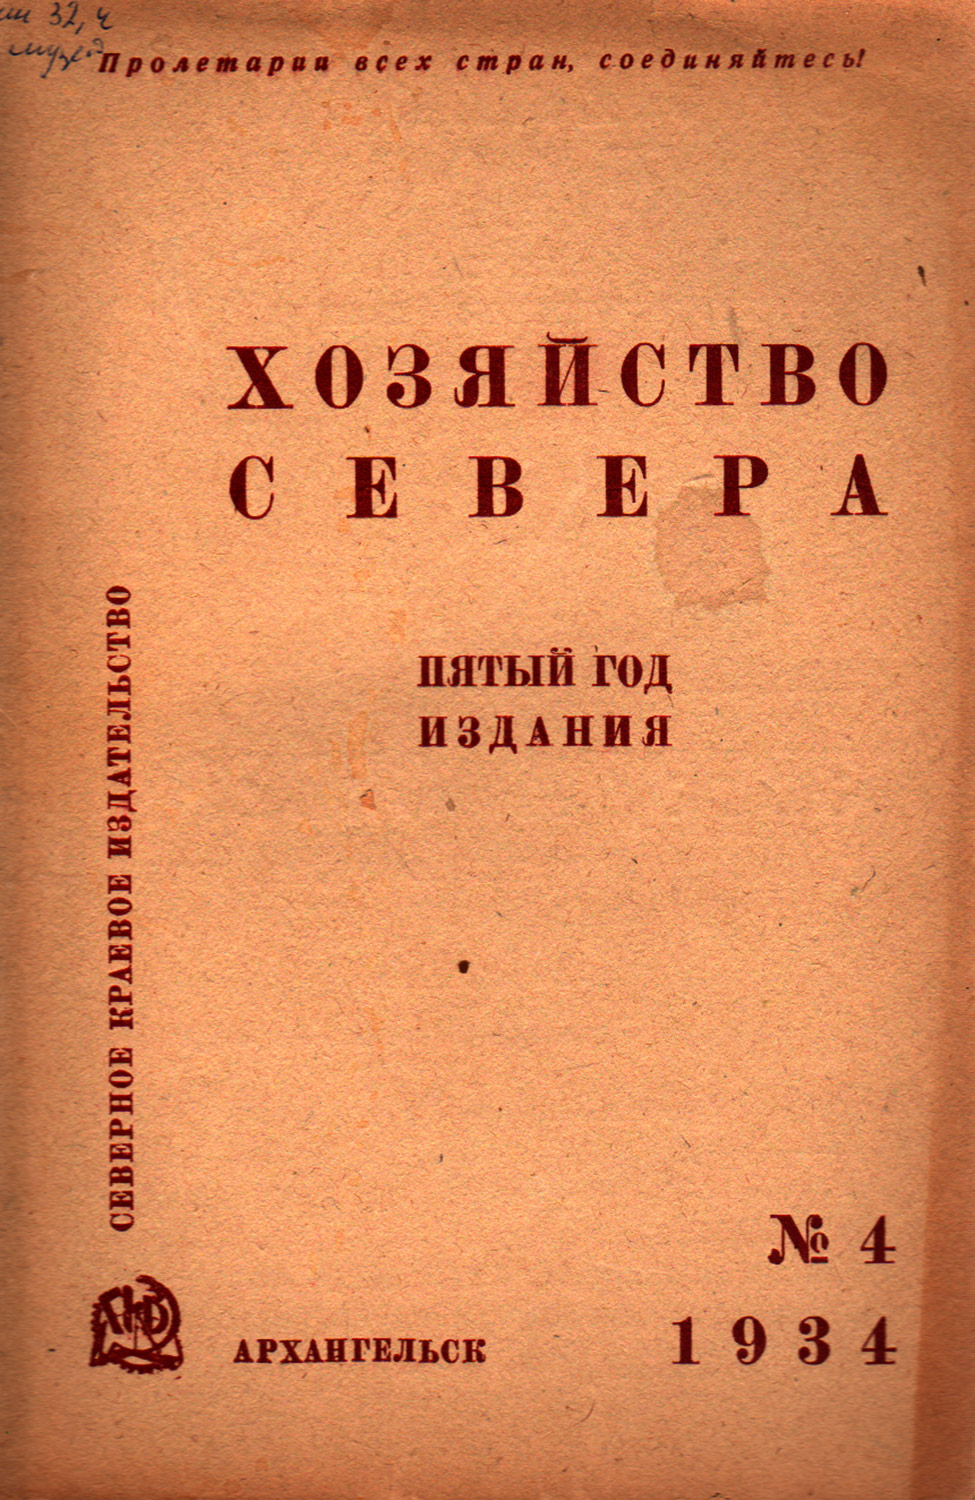 1934 г. Чернов А. А. Перспективы и задачи геологических исследований в Печорском крае